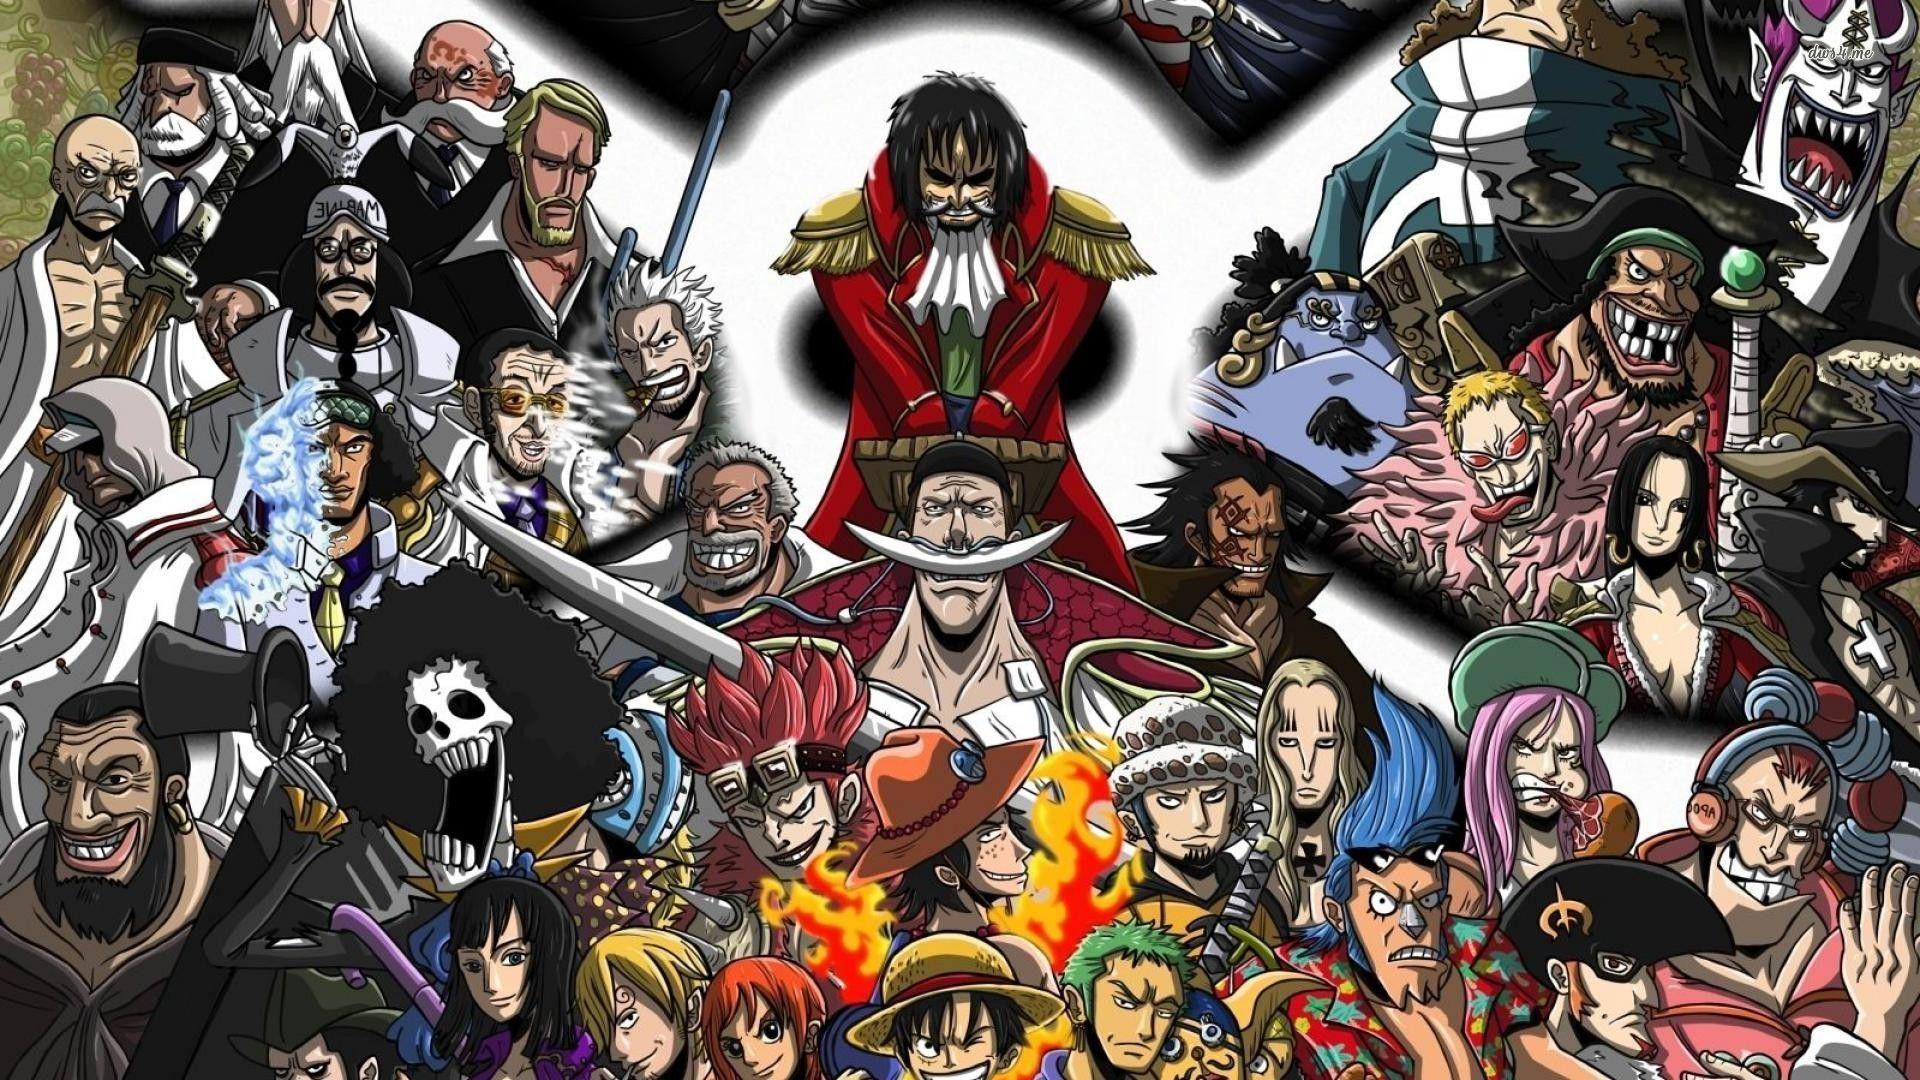 Fondos de One Piece - Los mejores fondos de One Piece gratis - WallpaperAccess